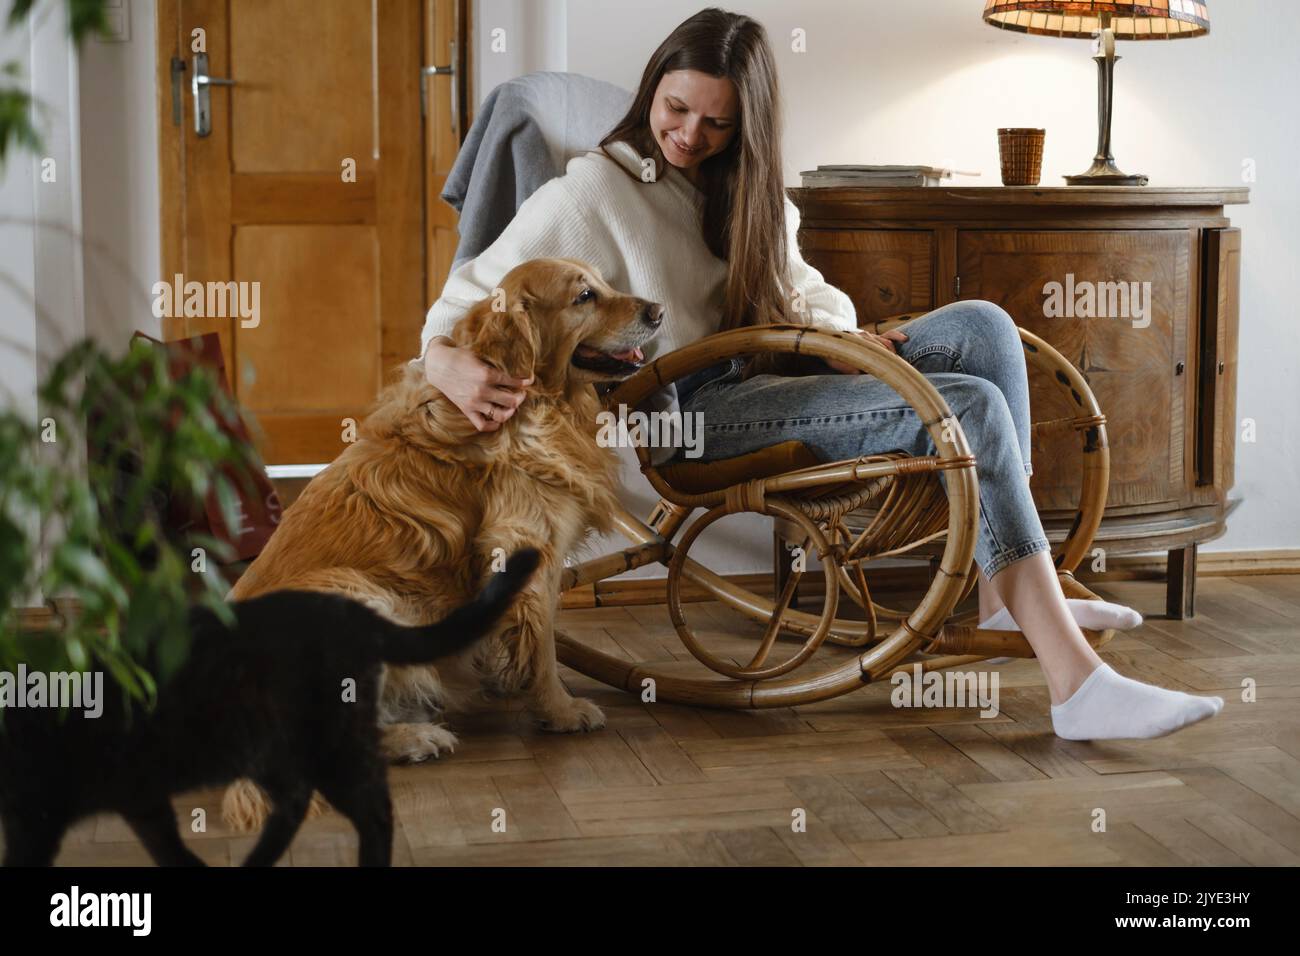 Jeune femme avec chien Golden Retriever, chat assis sur une chaise à bascule. Ambiance chaleureuse, vie lente, personnes avec animaux de compagnie. Intérieur de maison vintage Banque D'Images